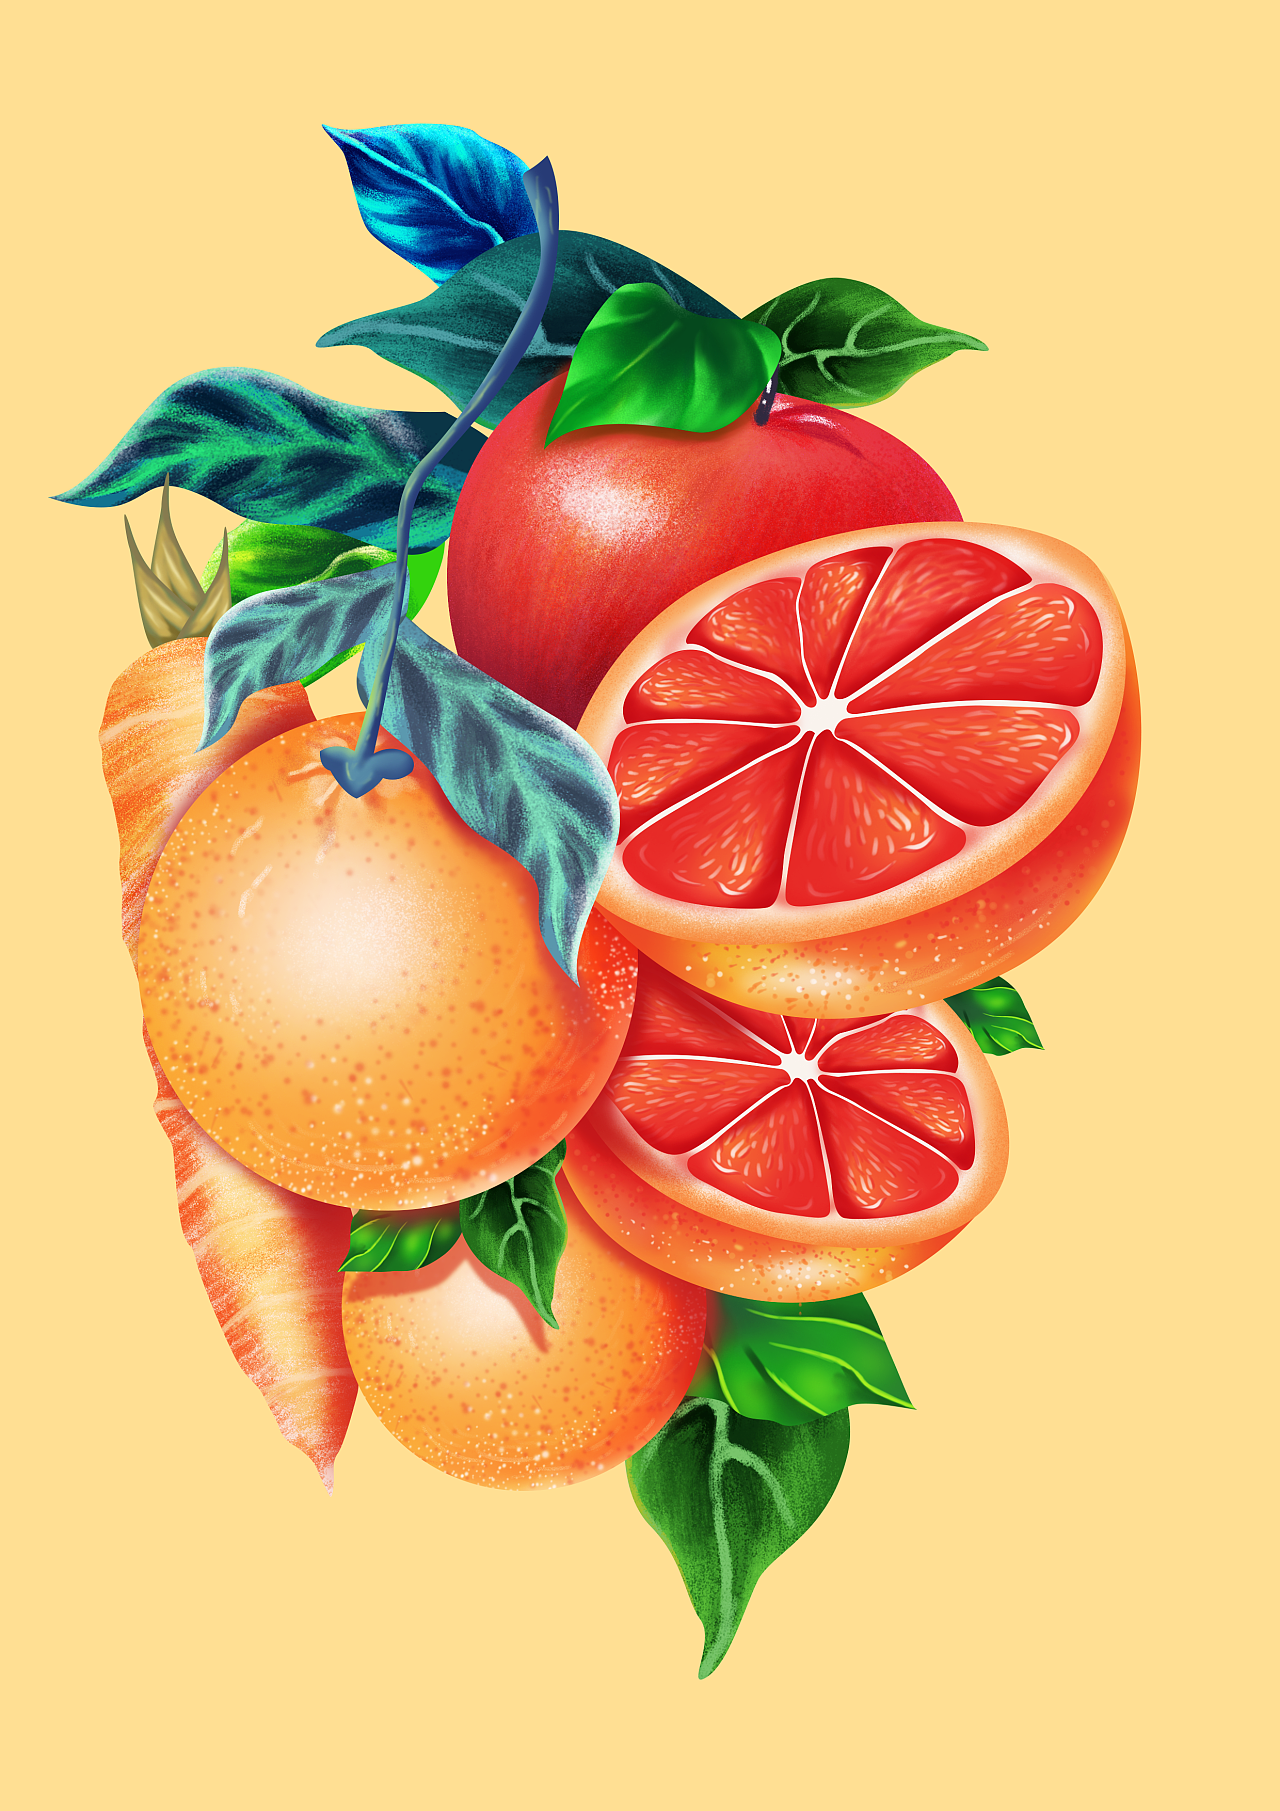 美粒果园复合果蔬汁包装插画设计